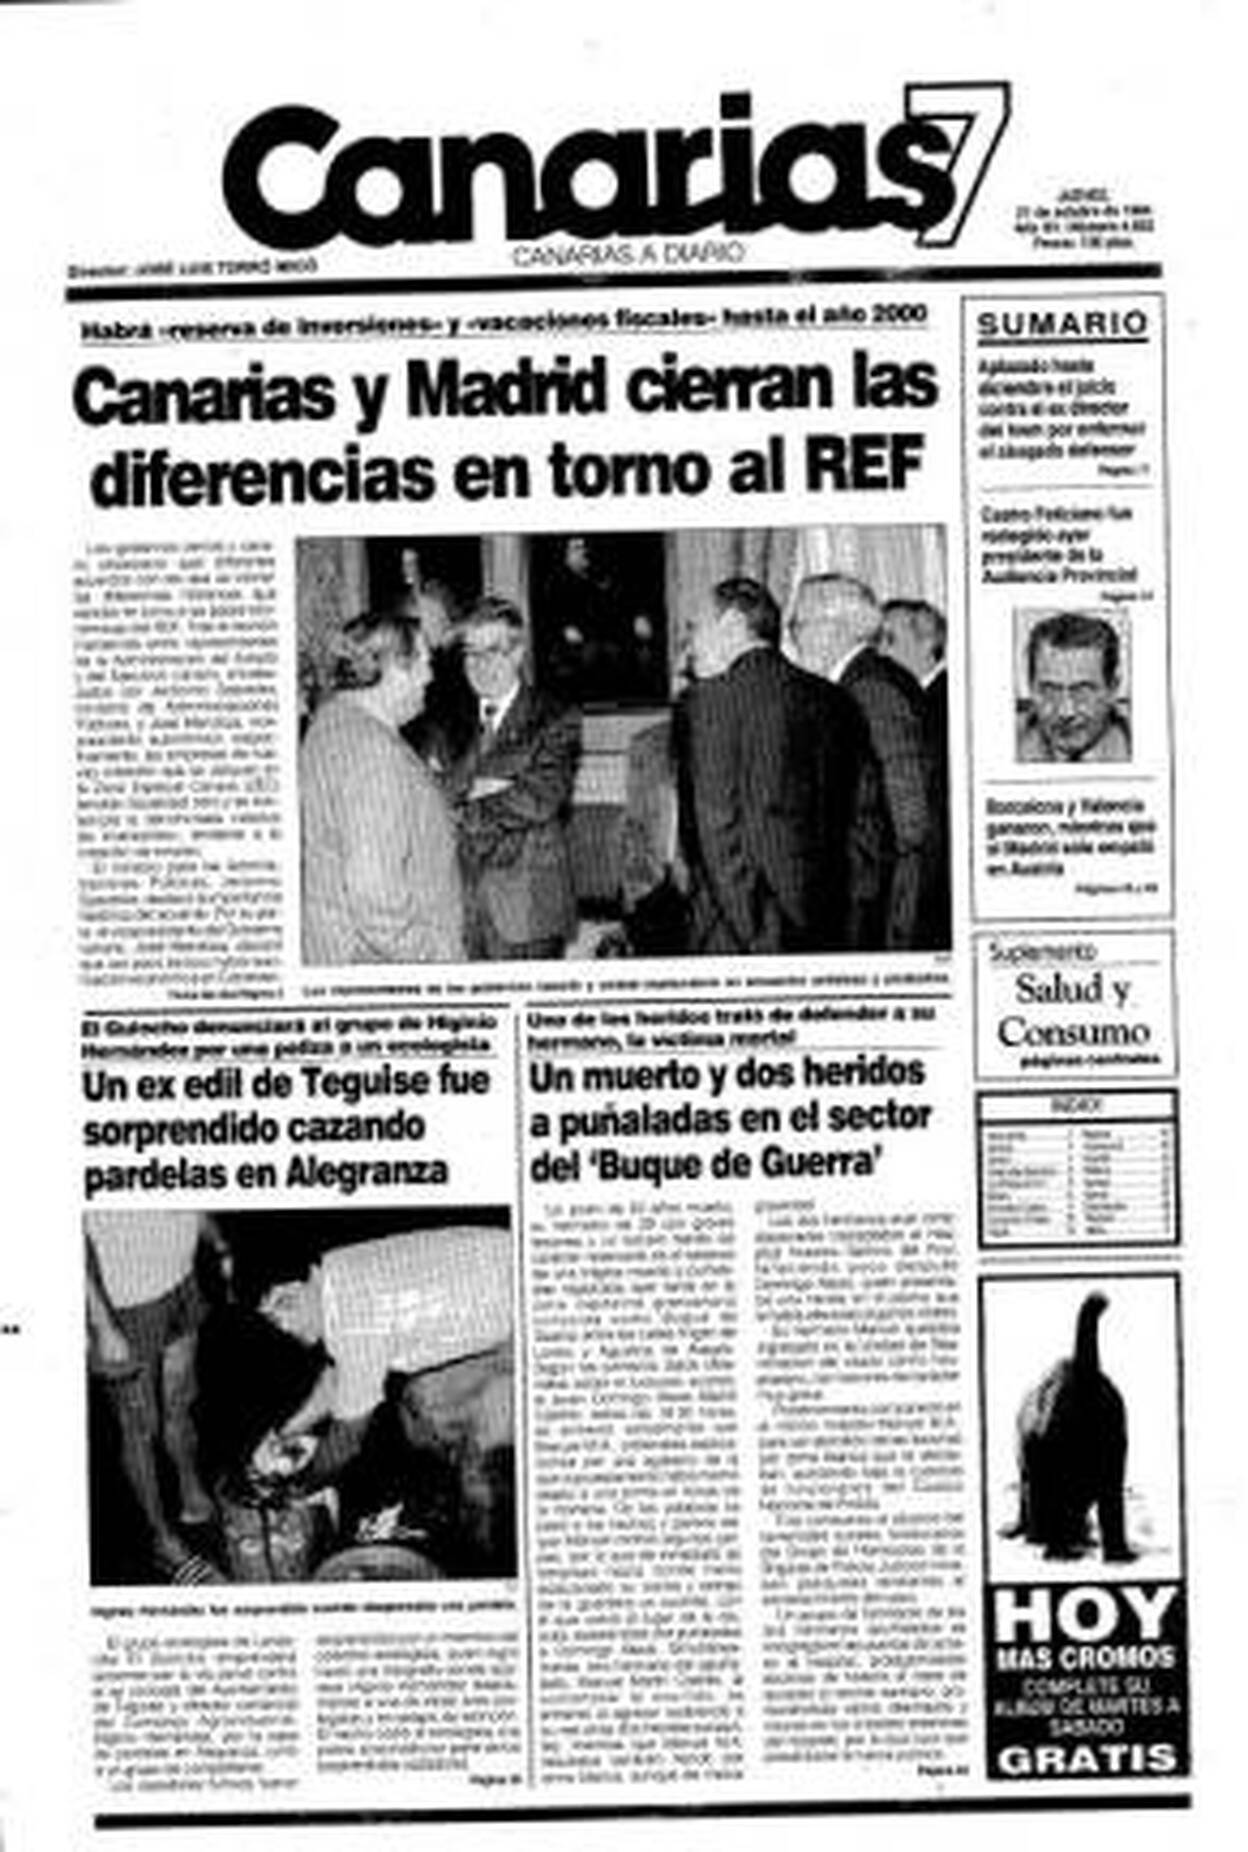 Hace 25 años en Canarias7